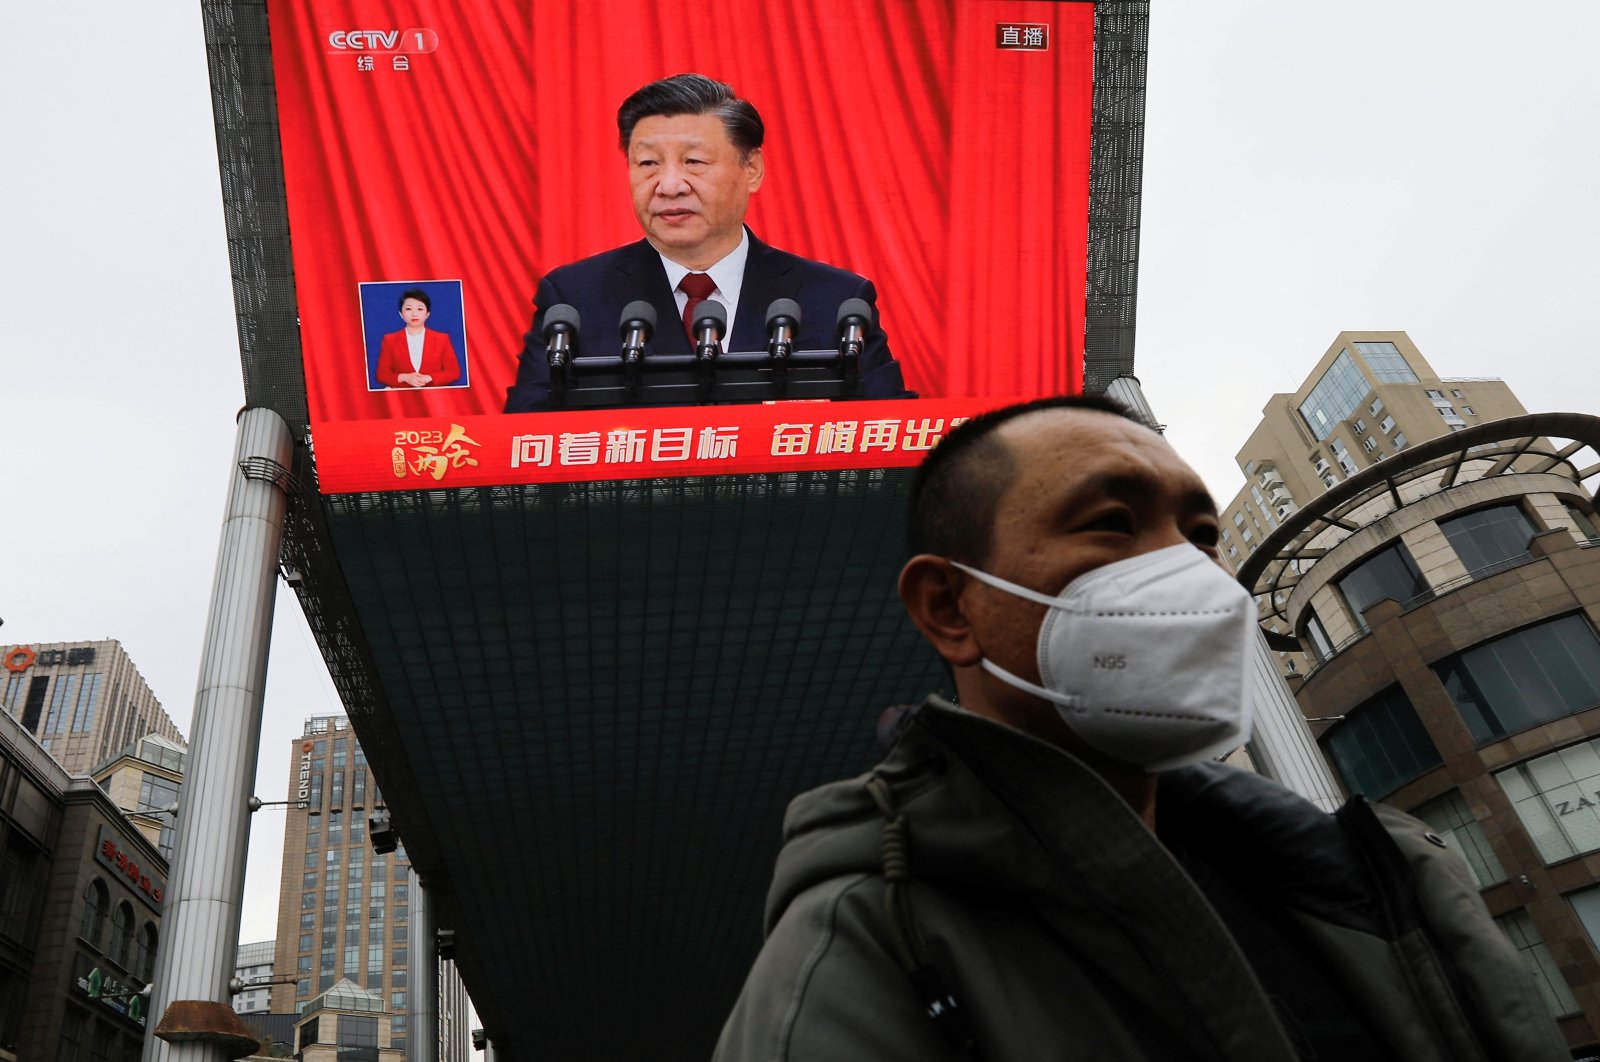 Xi China mendesak pertahanan yang lebih baik, peran yang lebih besar dalam diplomasi global